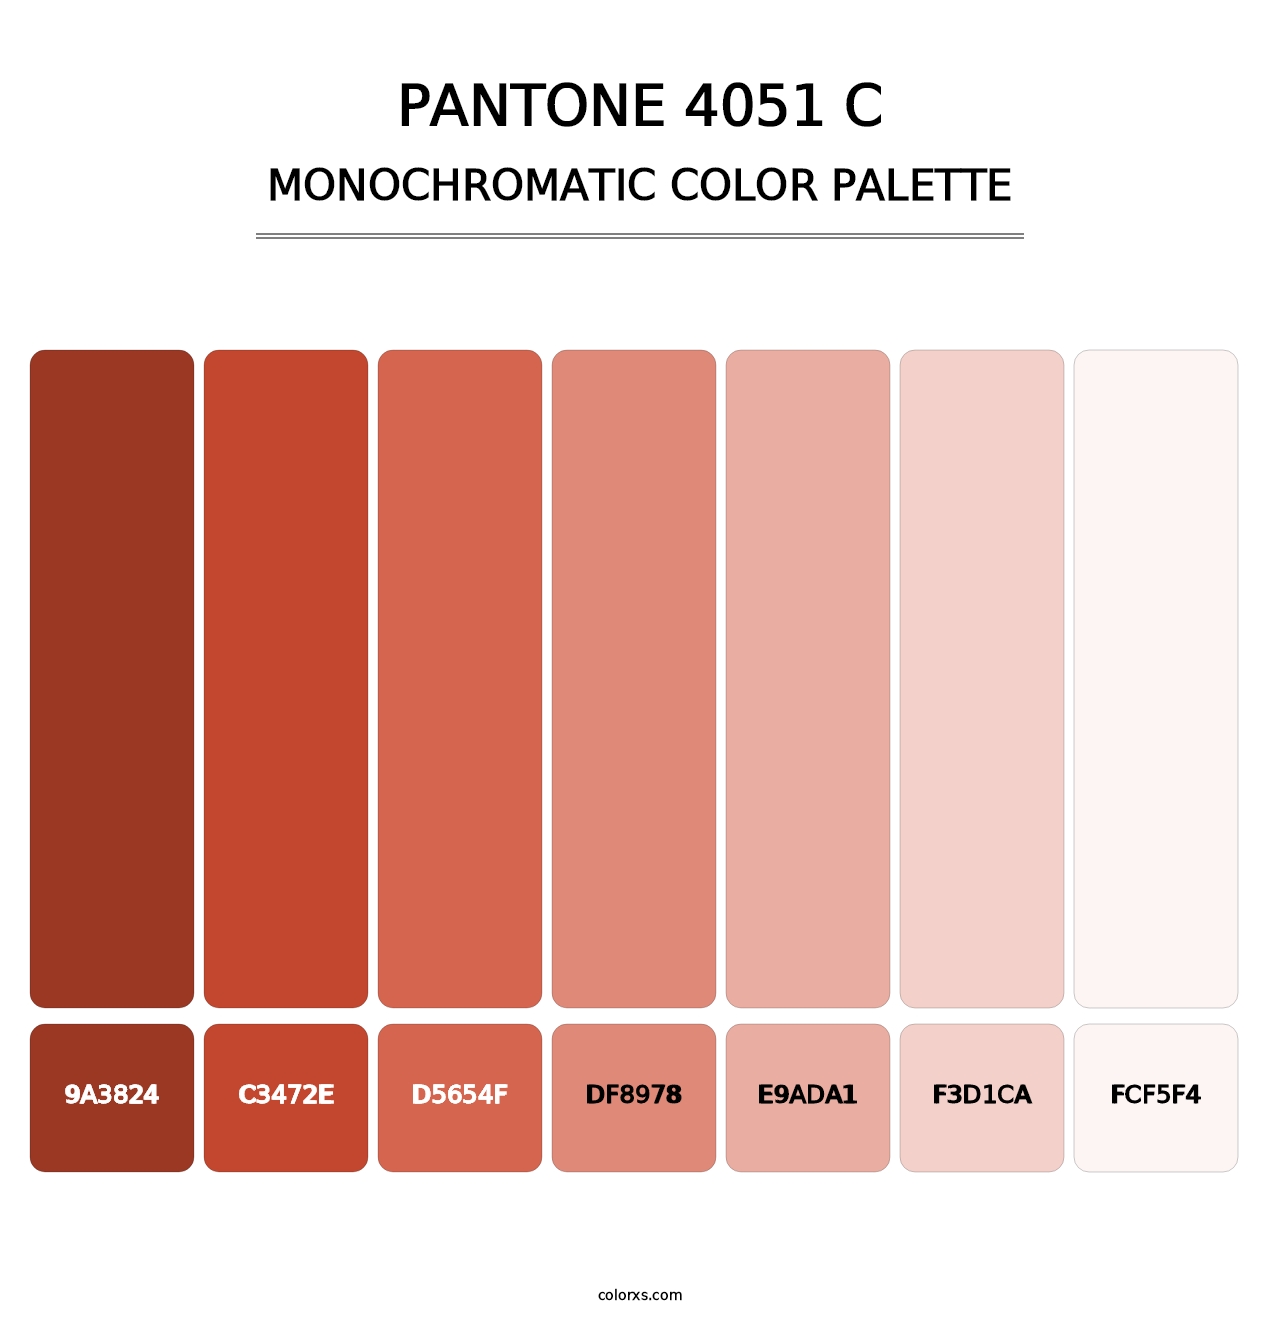 PANTONE 4051 C - Monochromatic Color Palette